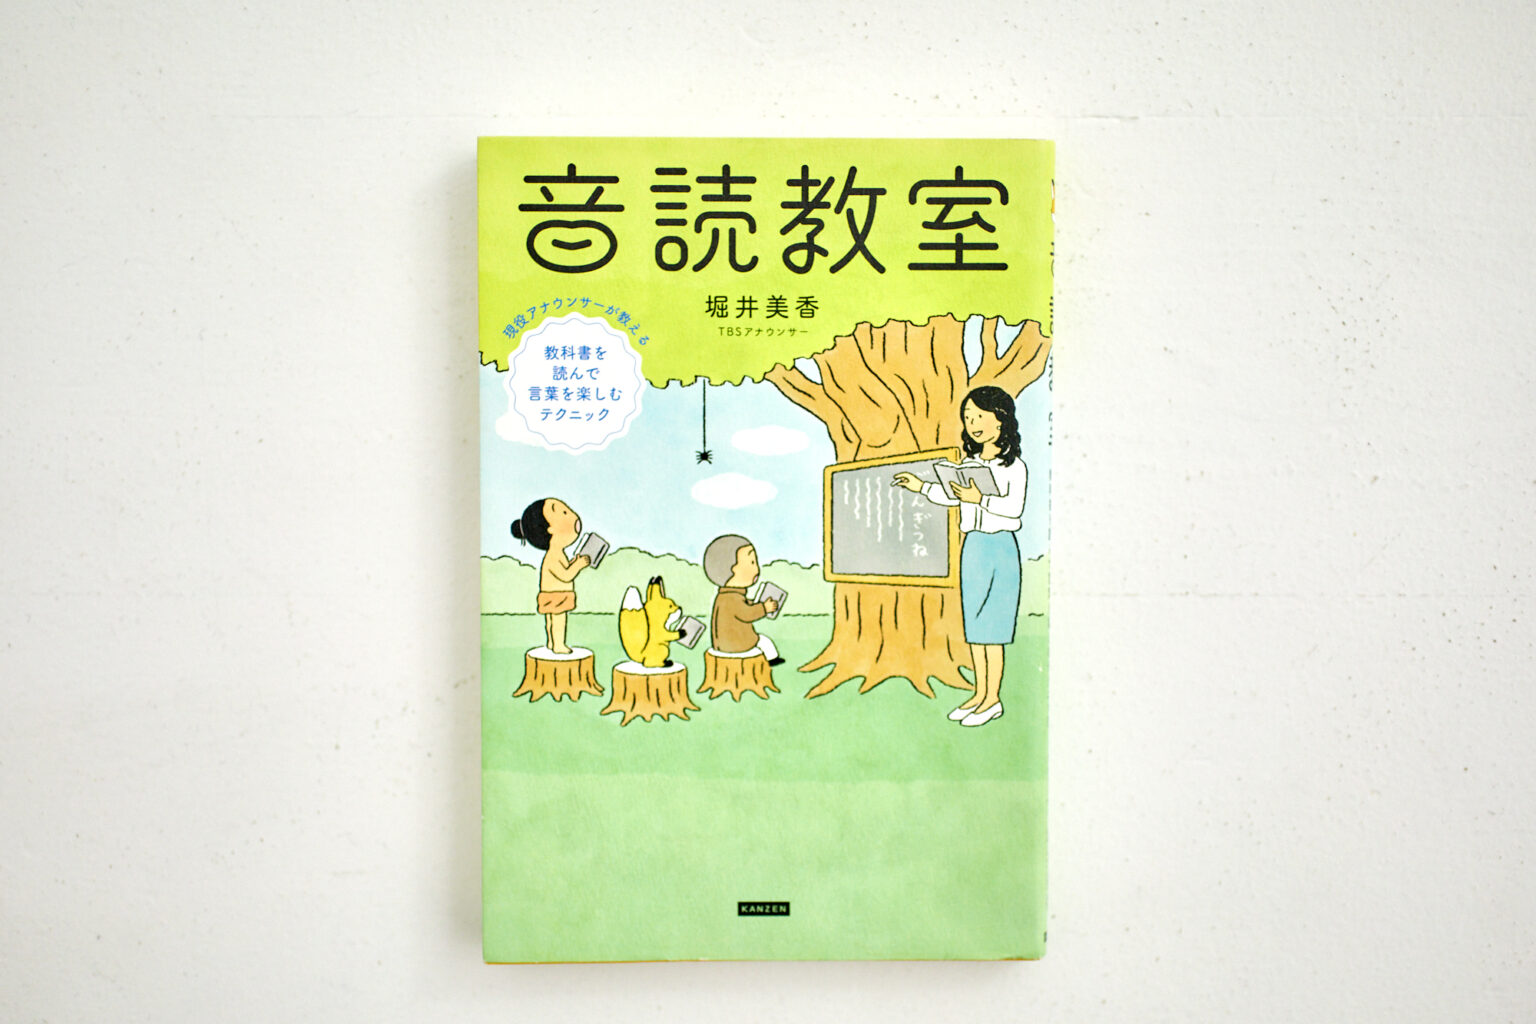 堀井美香さんのナレーションのノウハウが詰まった著書『音読教室』。子育ての現場でも、絵本を読み聞かせしたりする機会は多かったという。